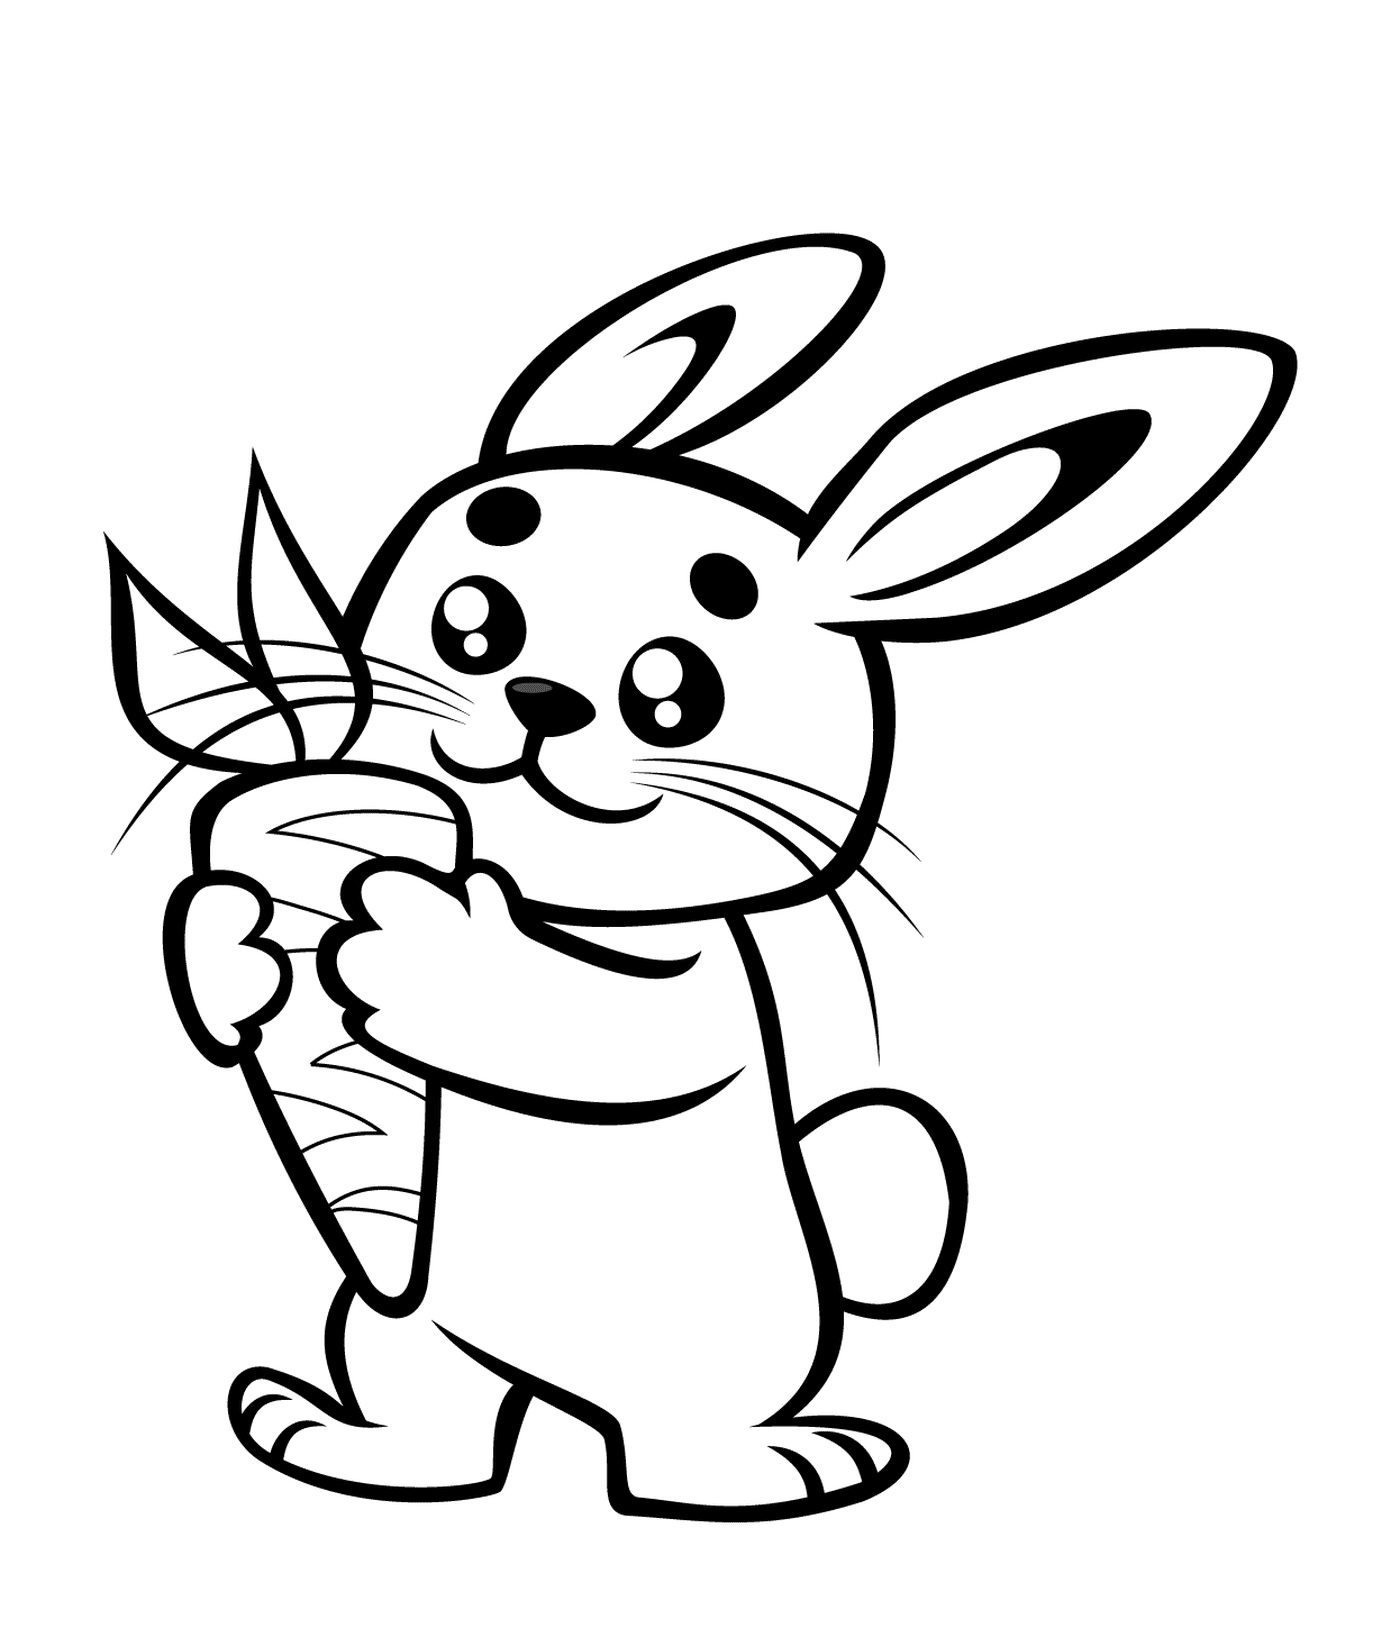  可爱的兔子拿着胡萝卜 